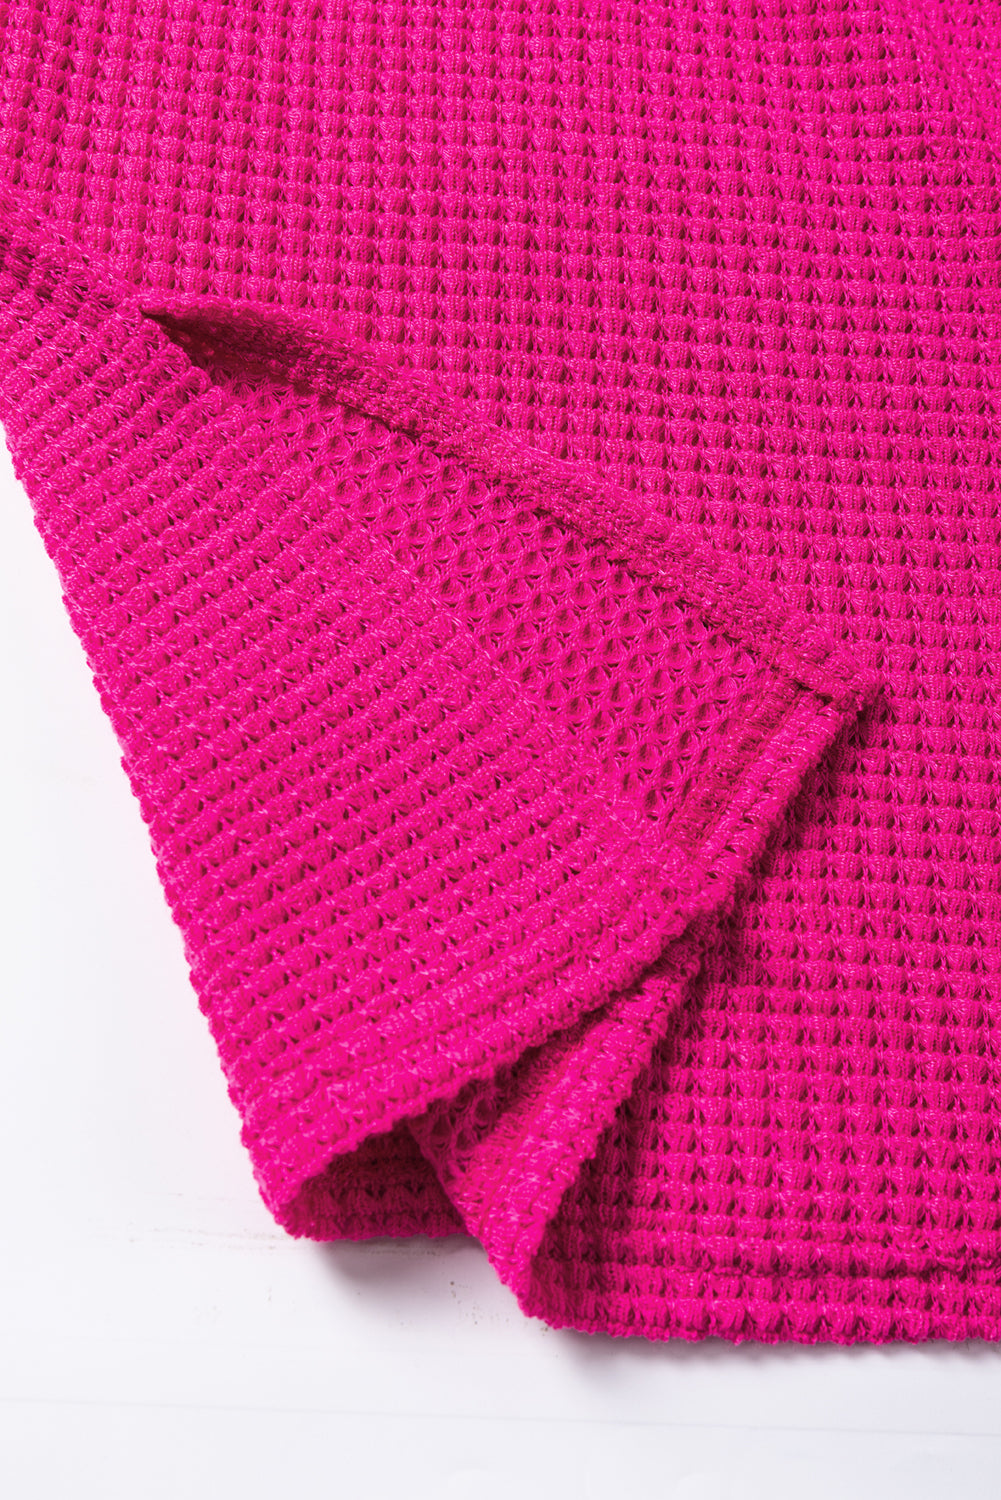 Rožnato rdeča teksturirana majica z dolgimi rokavi na sredinskem šivu